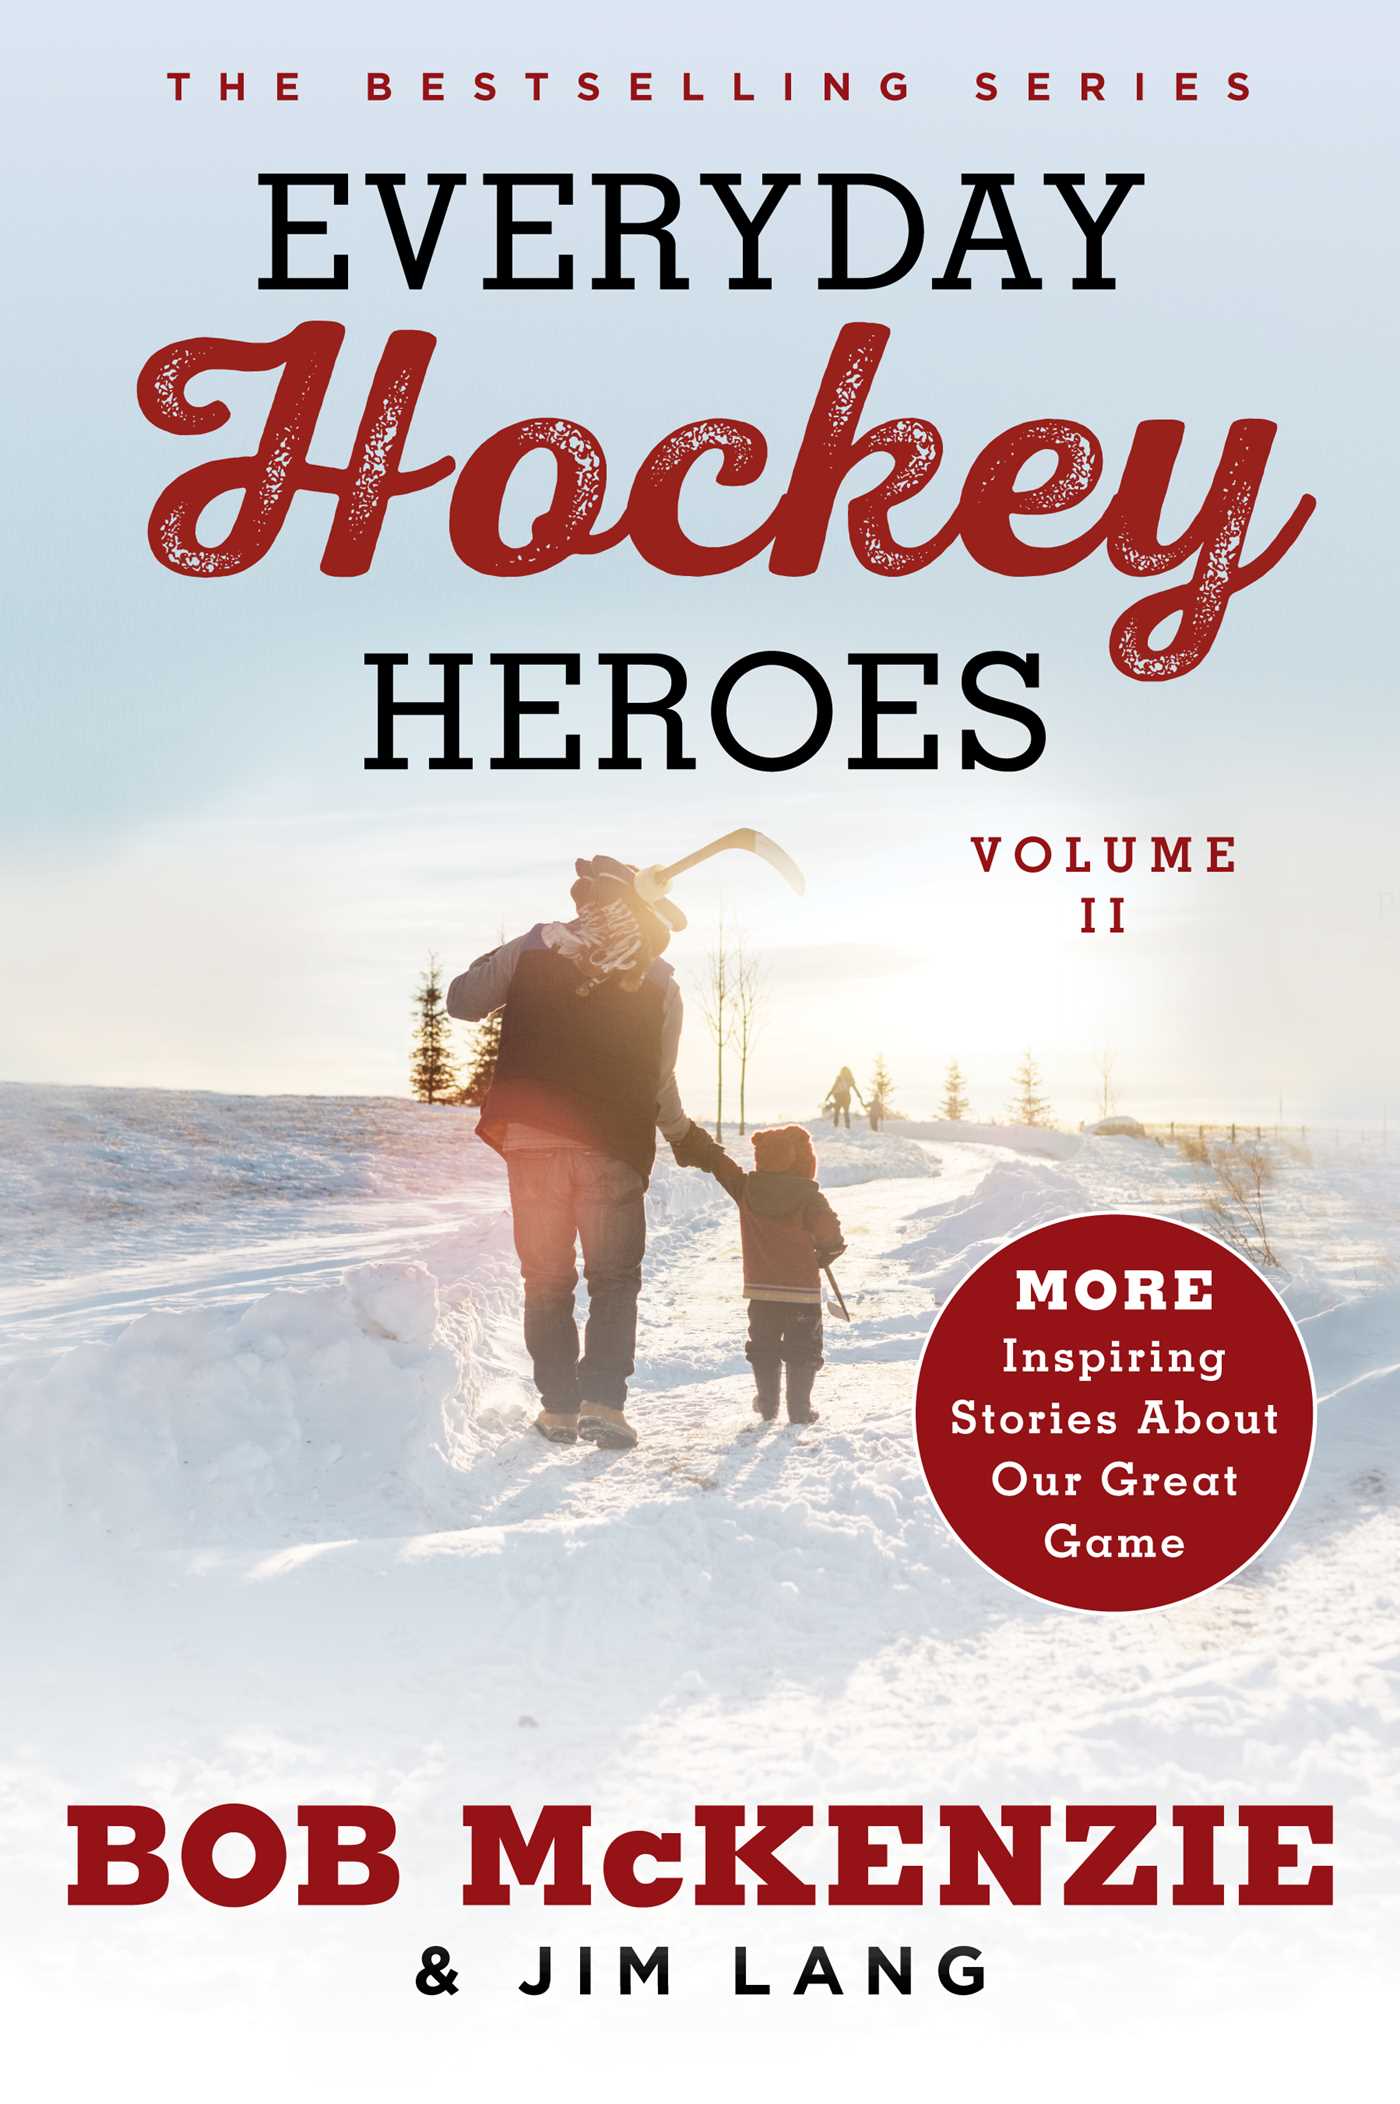 Everyday Hockey Heroes, Volume II